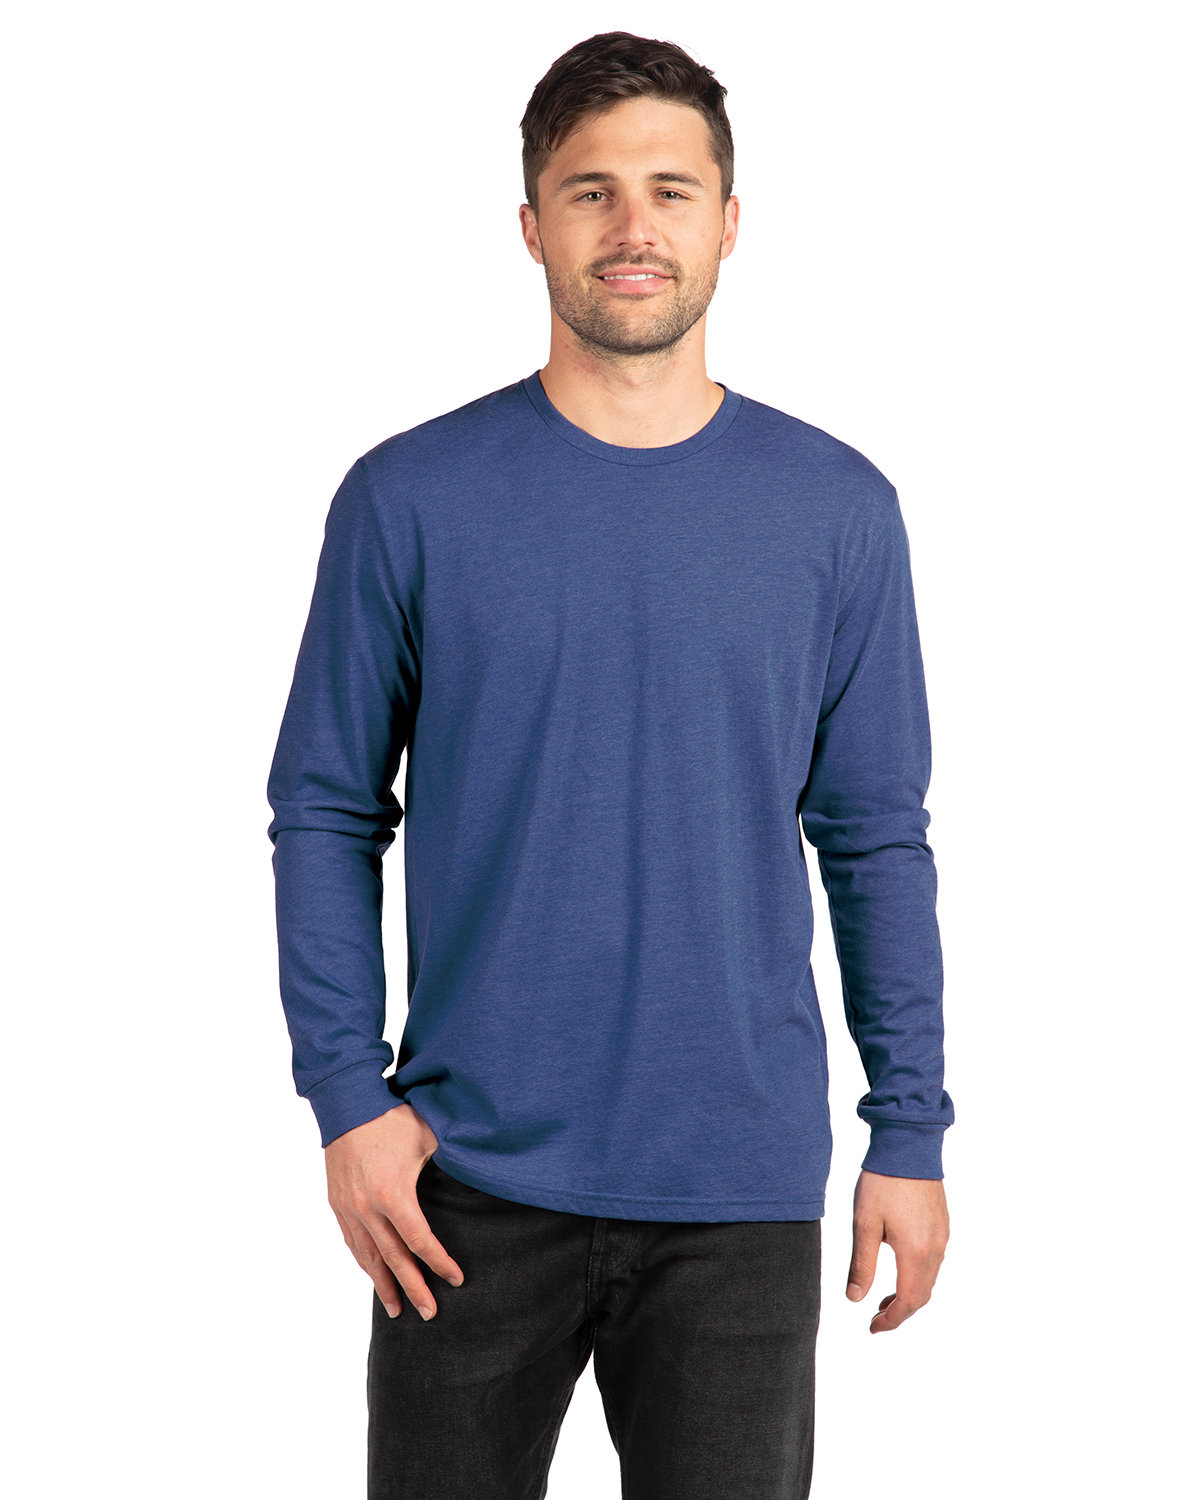 Next Level Apparel Unisex CVC Long-Sleeve T-Shirt | alphabroder